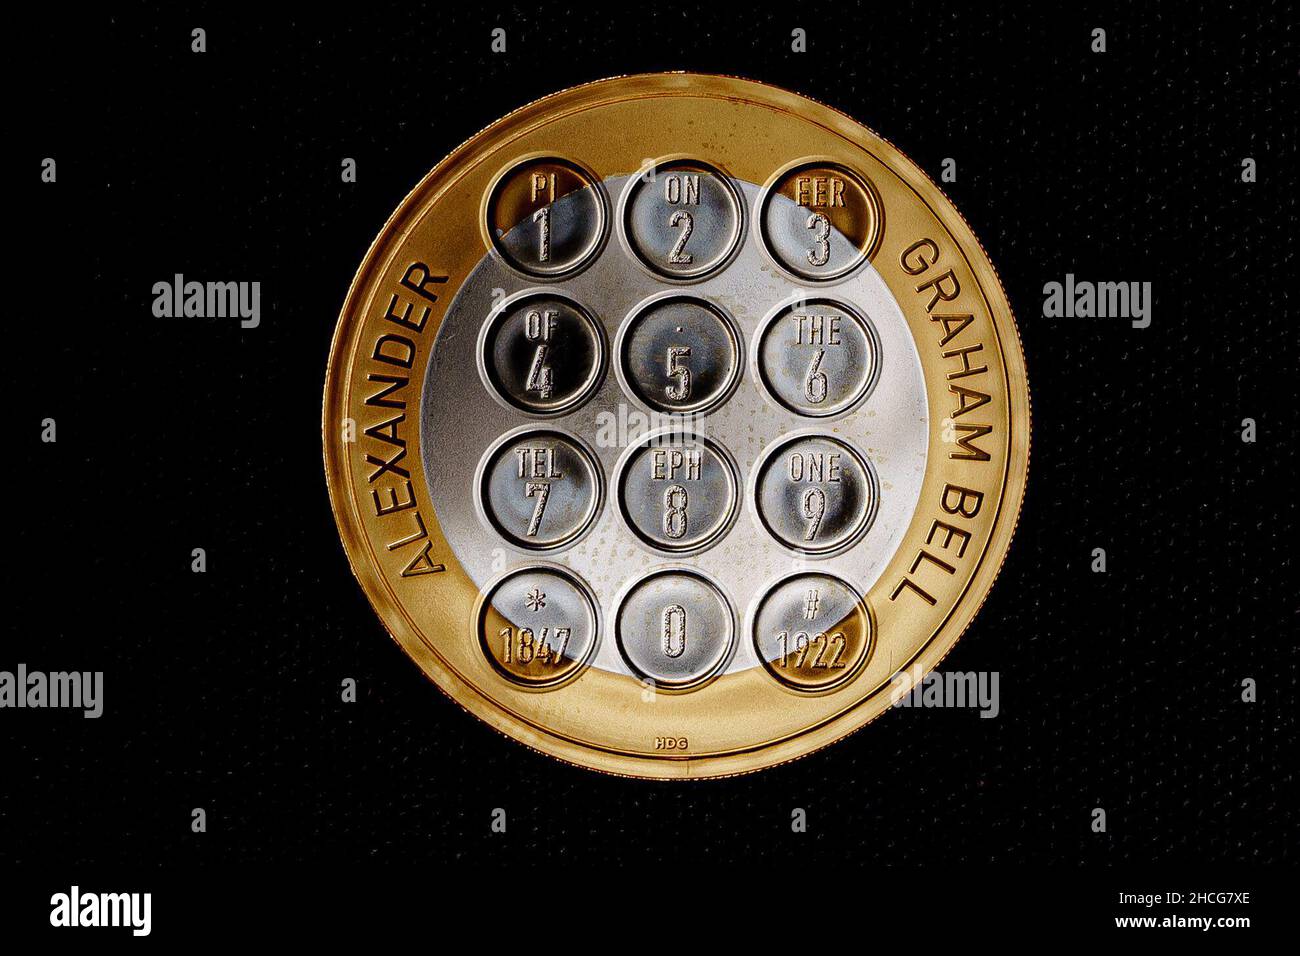 Ein Leben und Erbe von Alexander Graham Bell auf einer £2-Münze, die Teil der Veröffentlichung von fünf neuen Münzdesigns der Royal Mint für 2022 ist und wichtige Ereignisse und Jahrestage im Laufe des Jahres feiert, darunter eine 50p- und eine £5-Krone zur Feier des Platin-Jubiläums der Königin. Jede der Münzen zeigt ein neues und einzigartiges Design eines Auftragskünstlers und das von Jody Clark entworfene Vorderporträt Ihrer Majestät der Königin. Ausgabedatum: Mittwoch, 28. Dezember 2021. Stockfoto